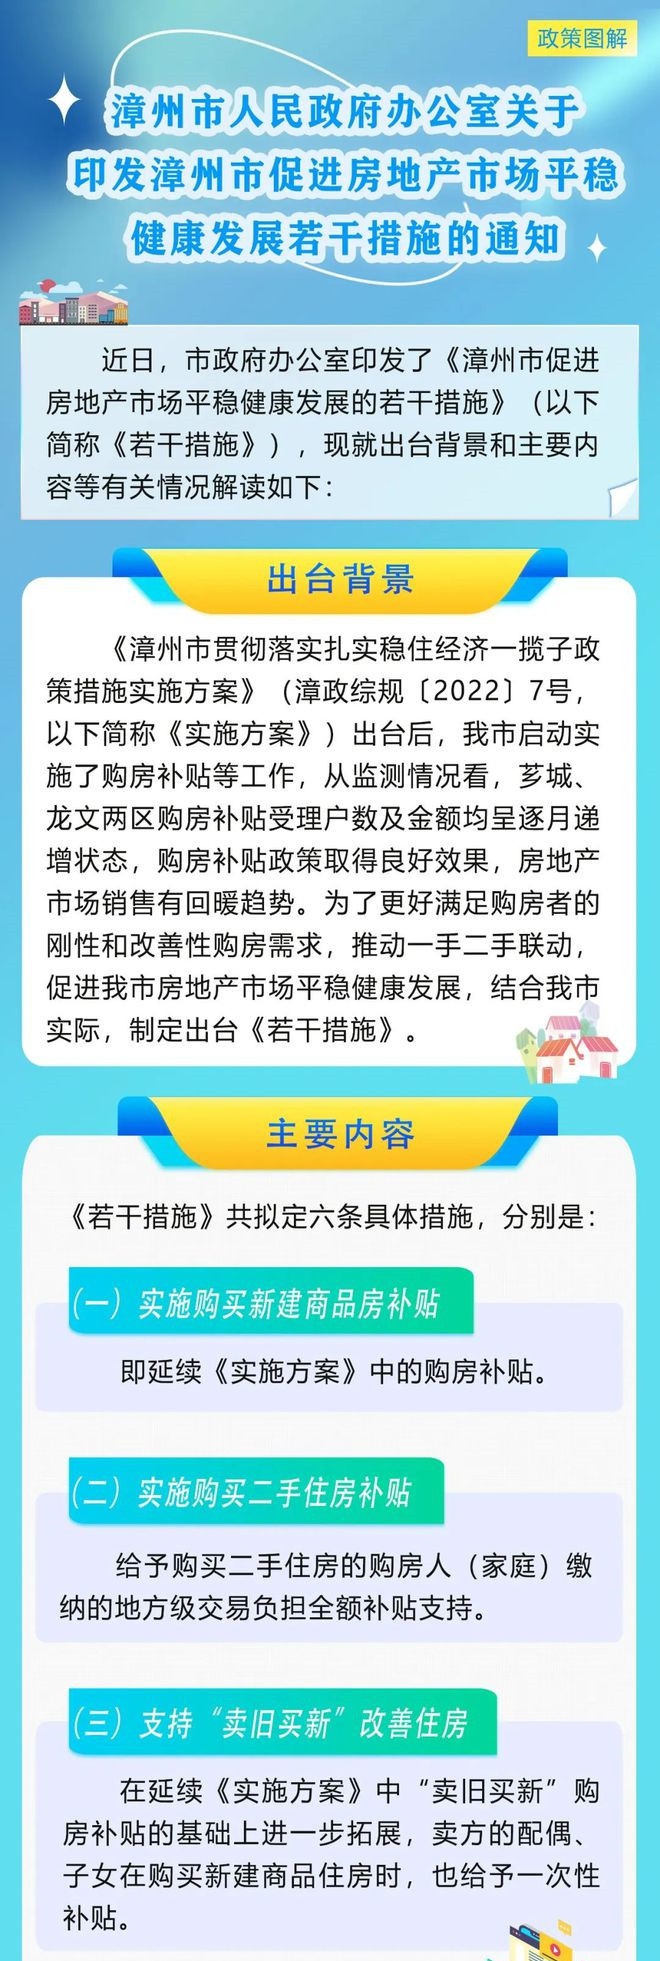 福建漳州发布六条楼市新政 涉及车位、购房补贴等